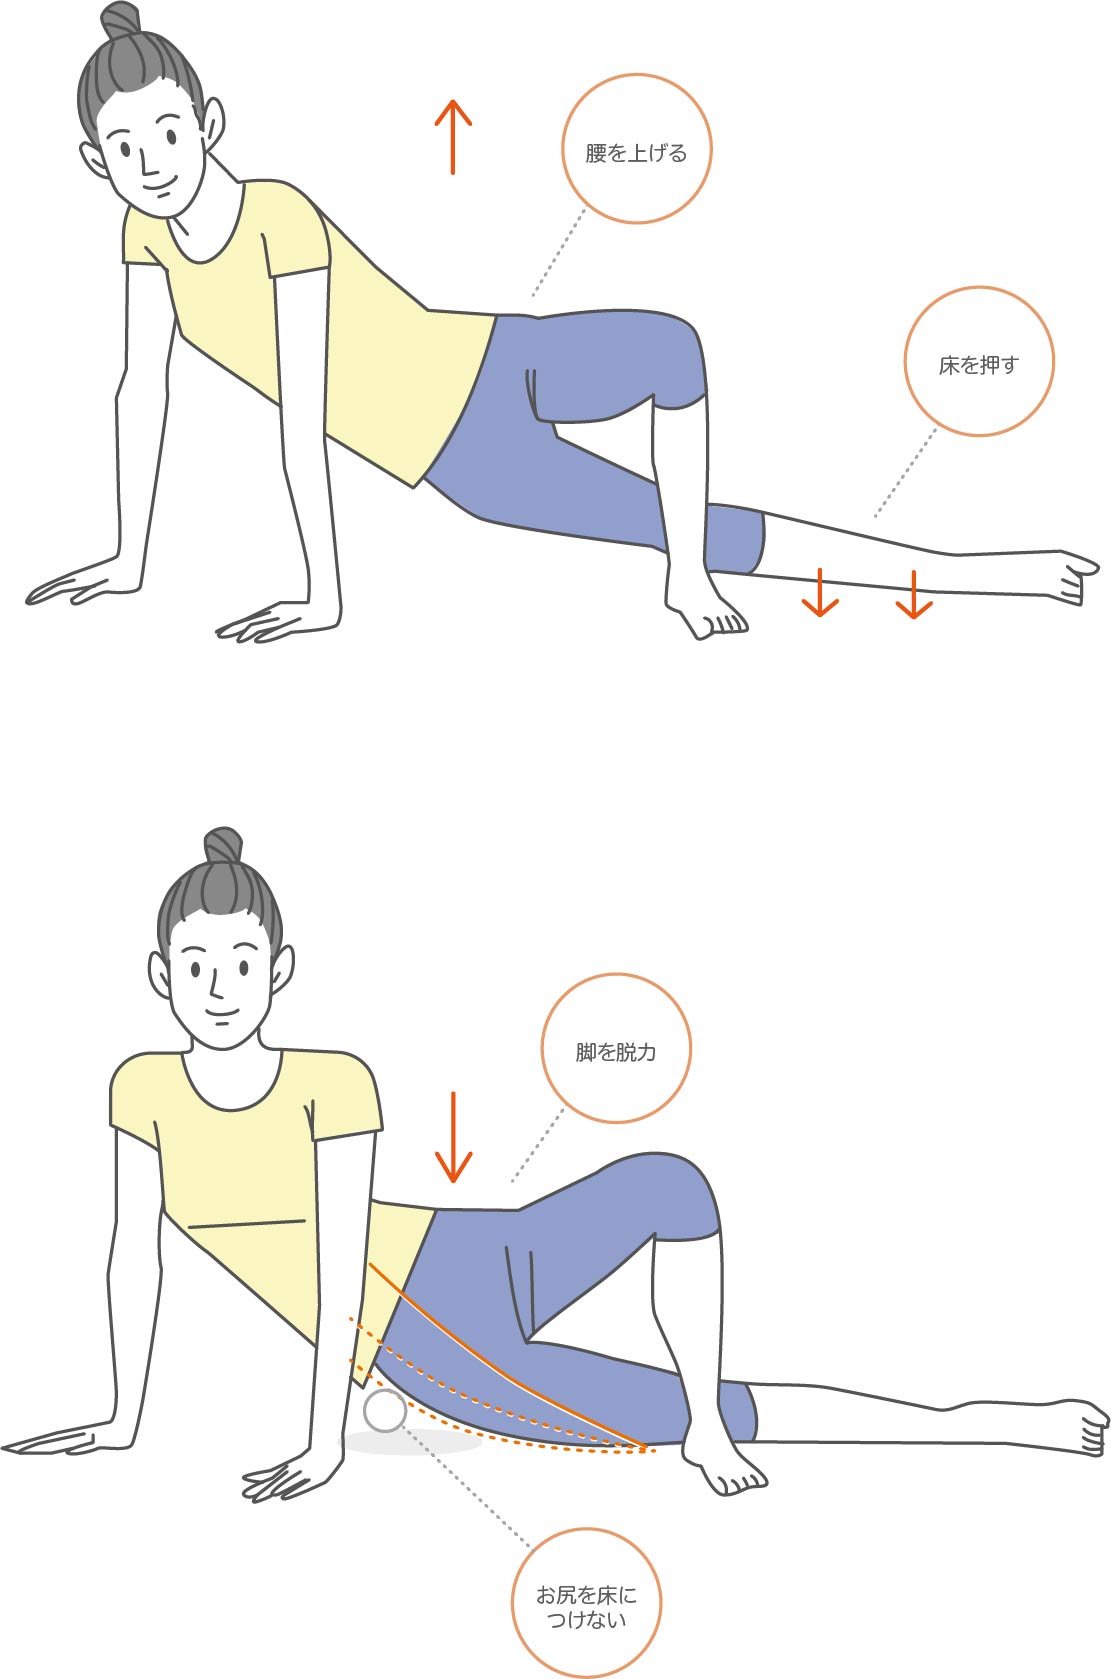 腸脛靭帯のストレッチをする女性のイラスト